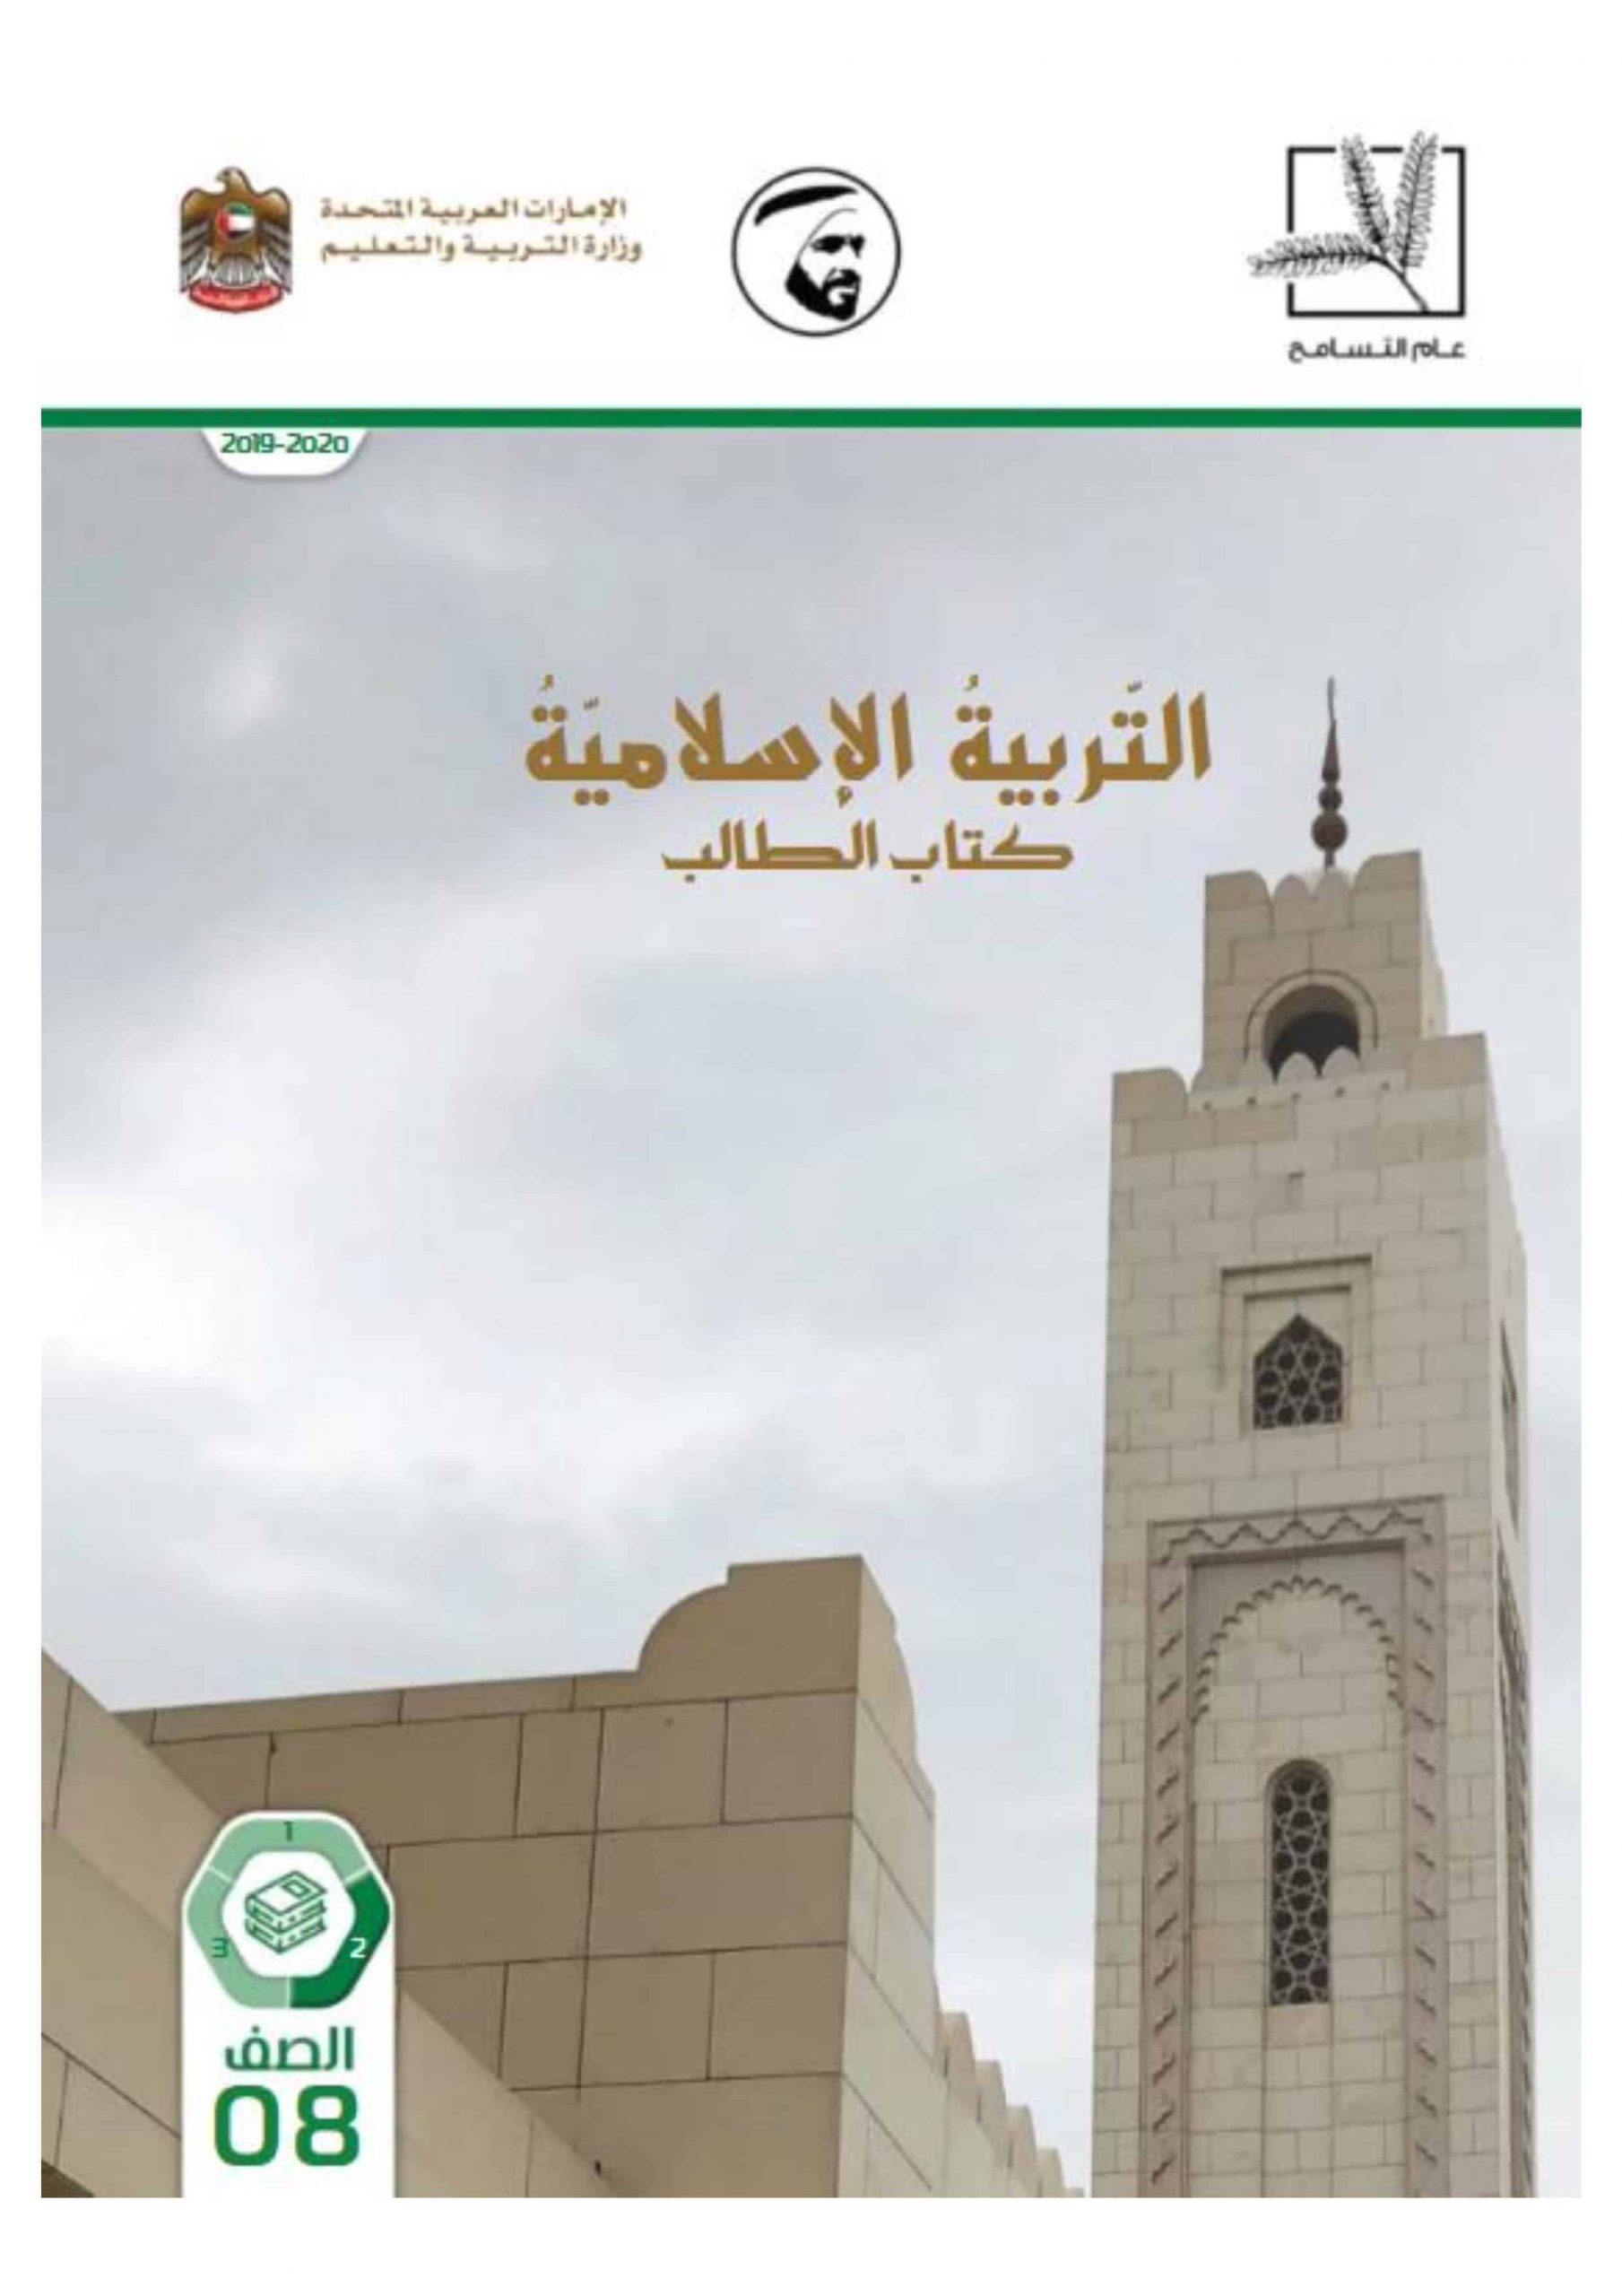 كتاب الطالب الفصل الدراسي الثاني 2019-2020 الصف الثامن مادة التربية الاسلامية 